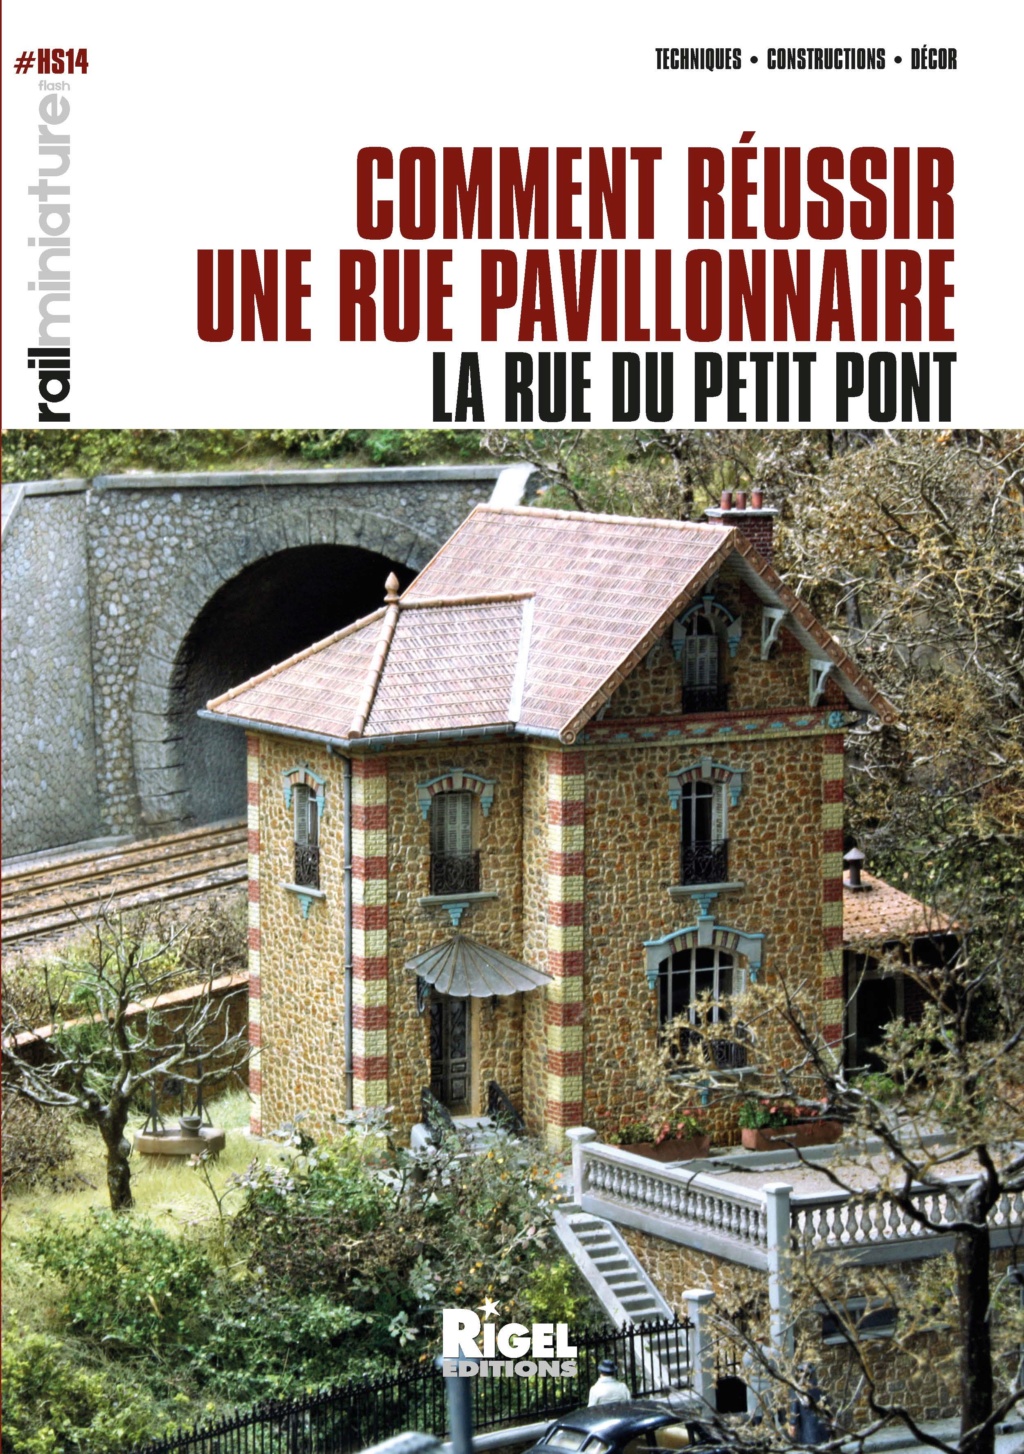 Hors-Série RMF n°14 COMMENT REUSSIR UNE RUE PAVILLONNAIRE 003-0810